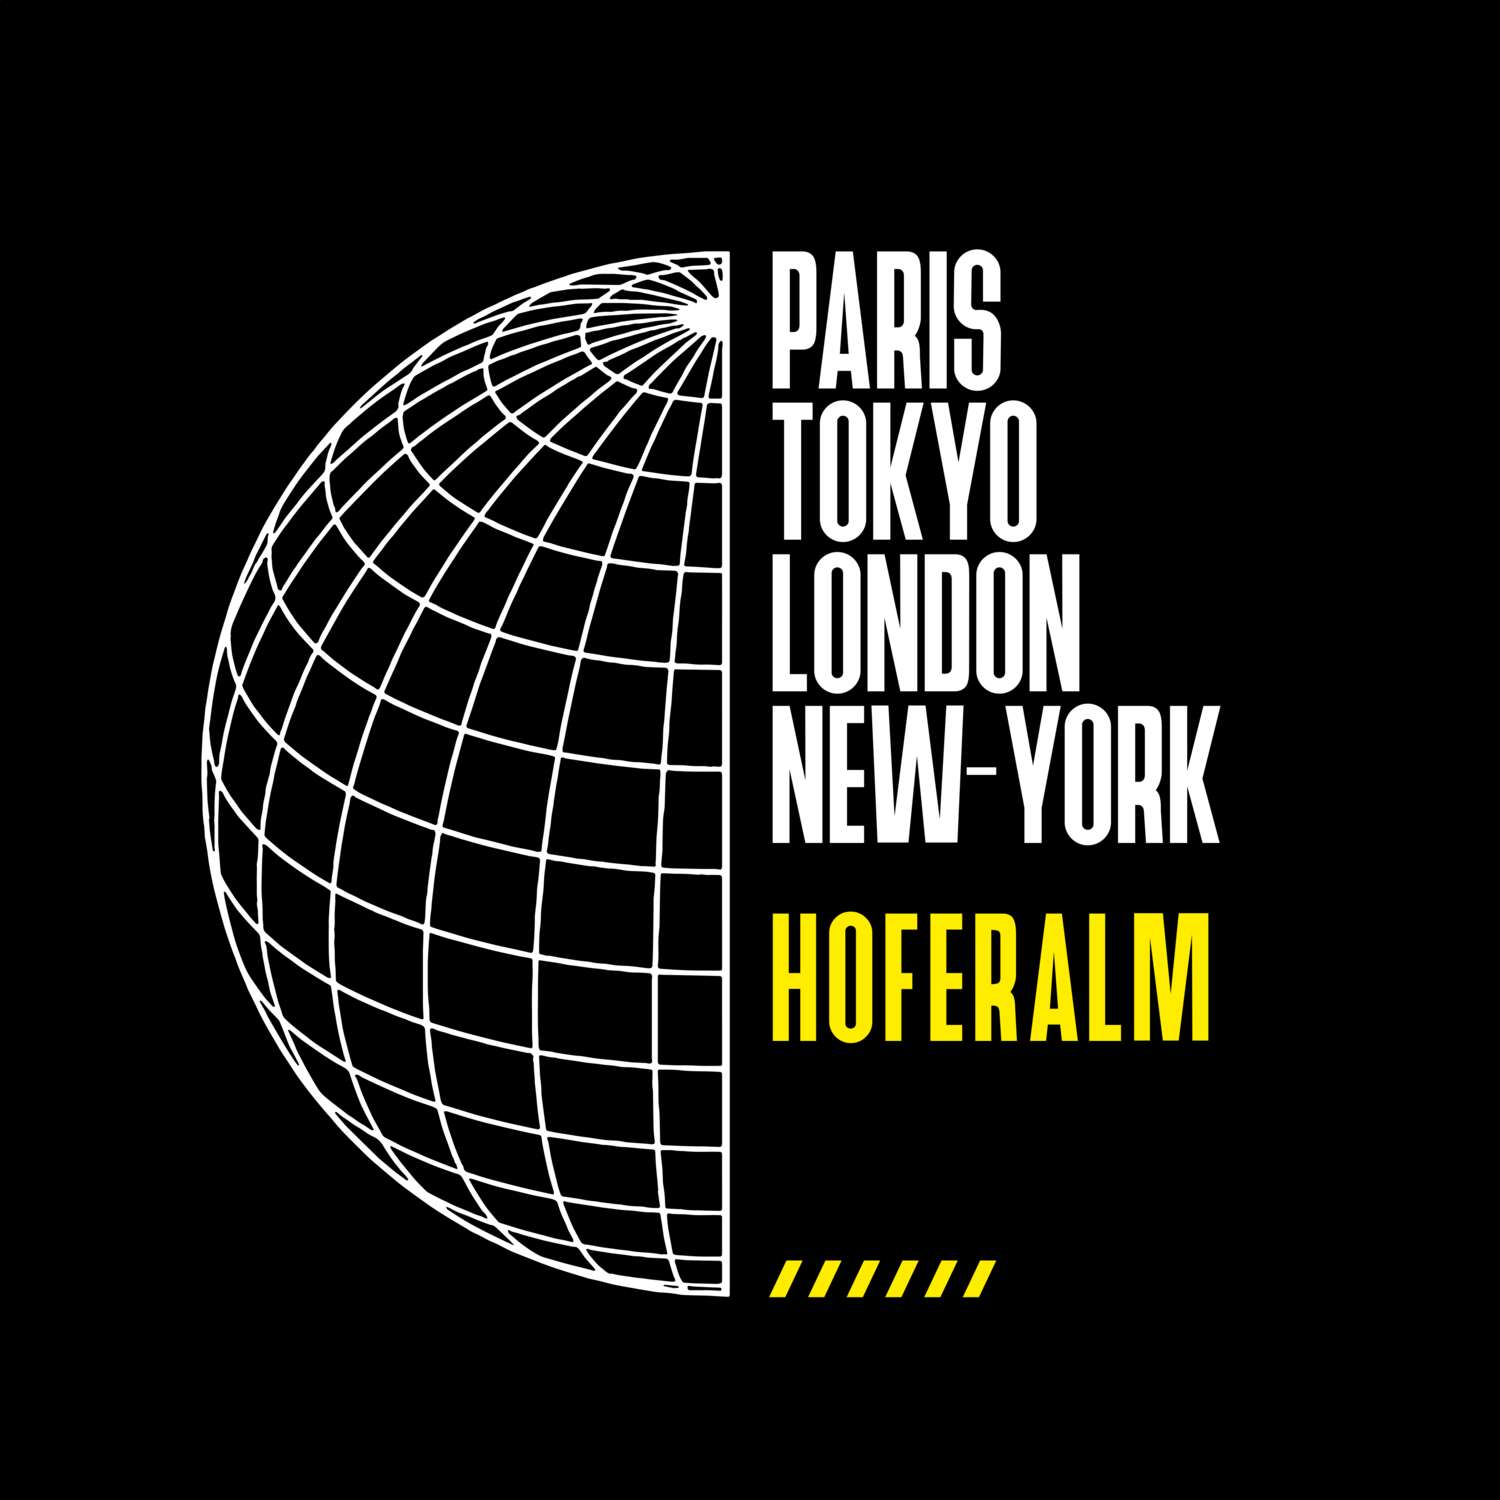 Hoferalm T-Shirt »Paris Tokyo London«